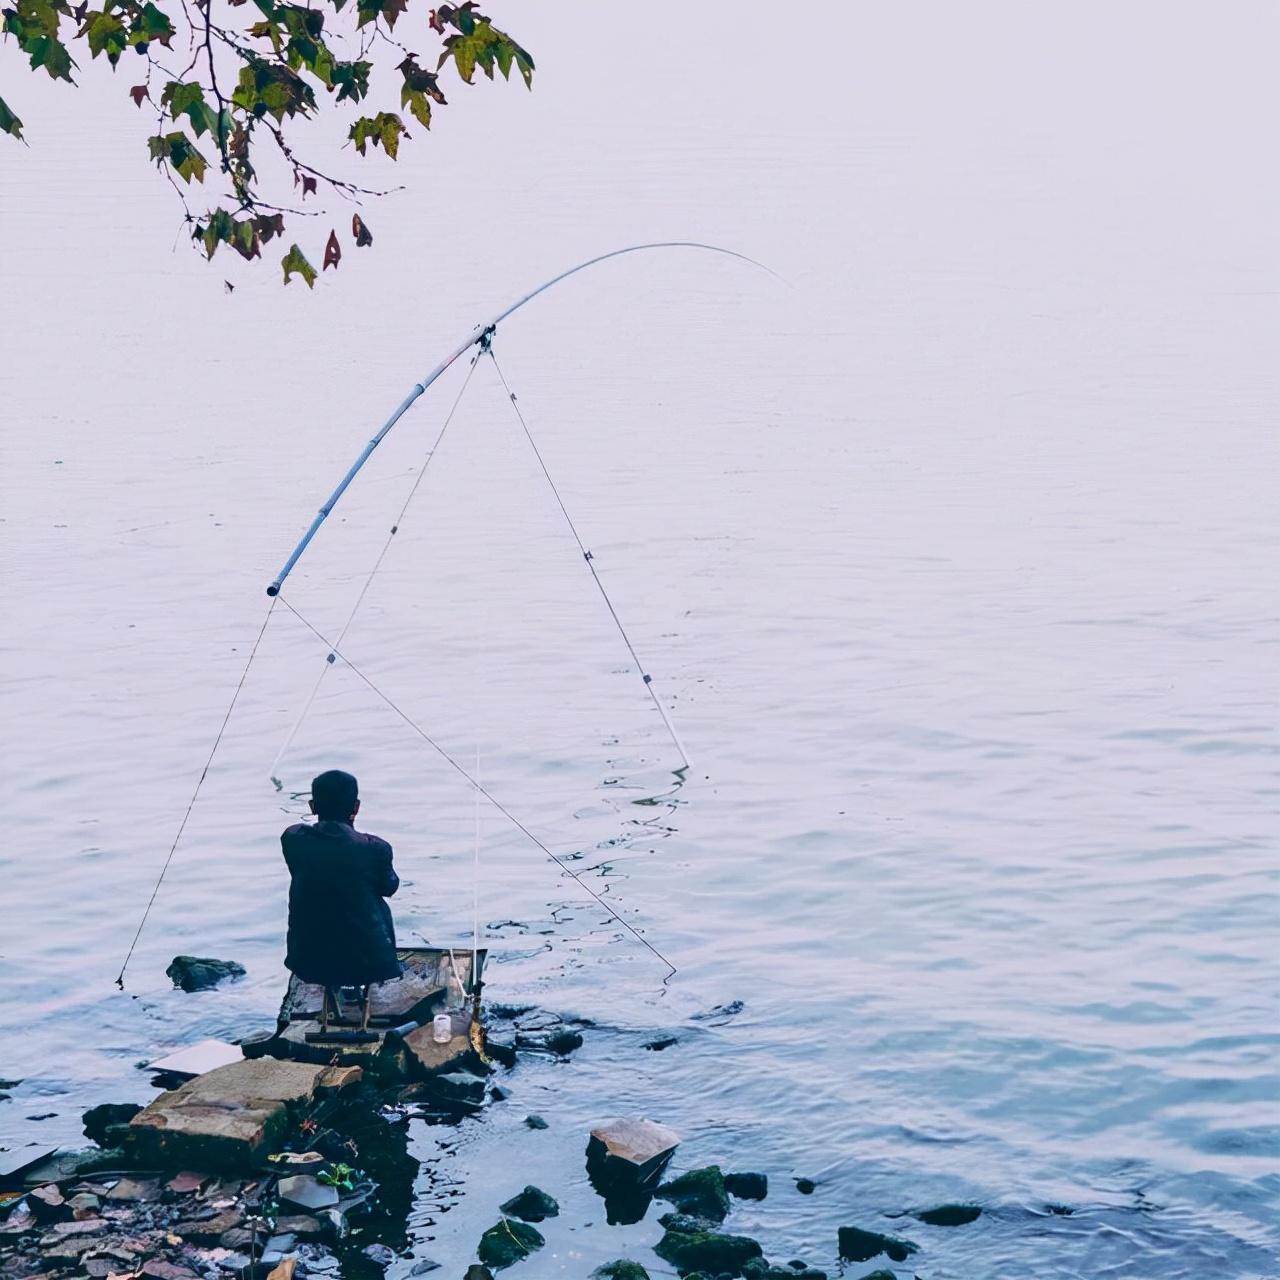 情景描写练习丨心情好和心情不好的片段描写，以钓鱼为例